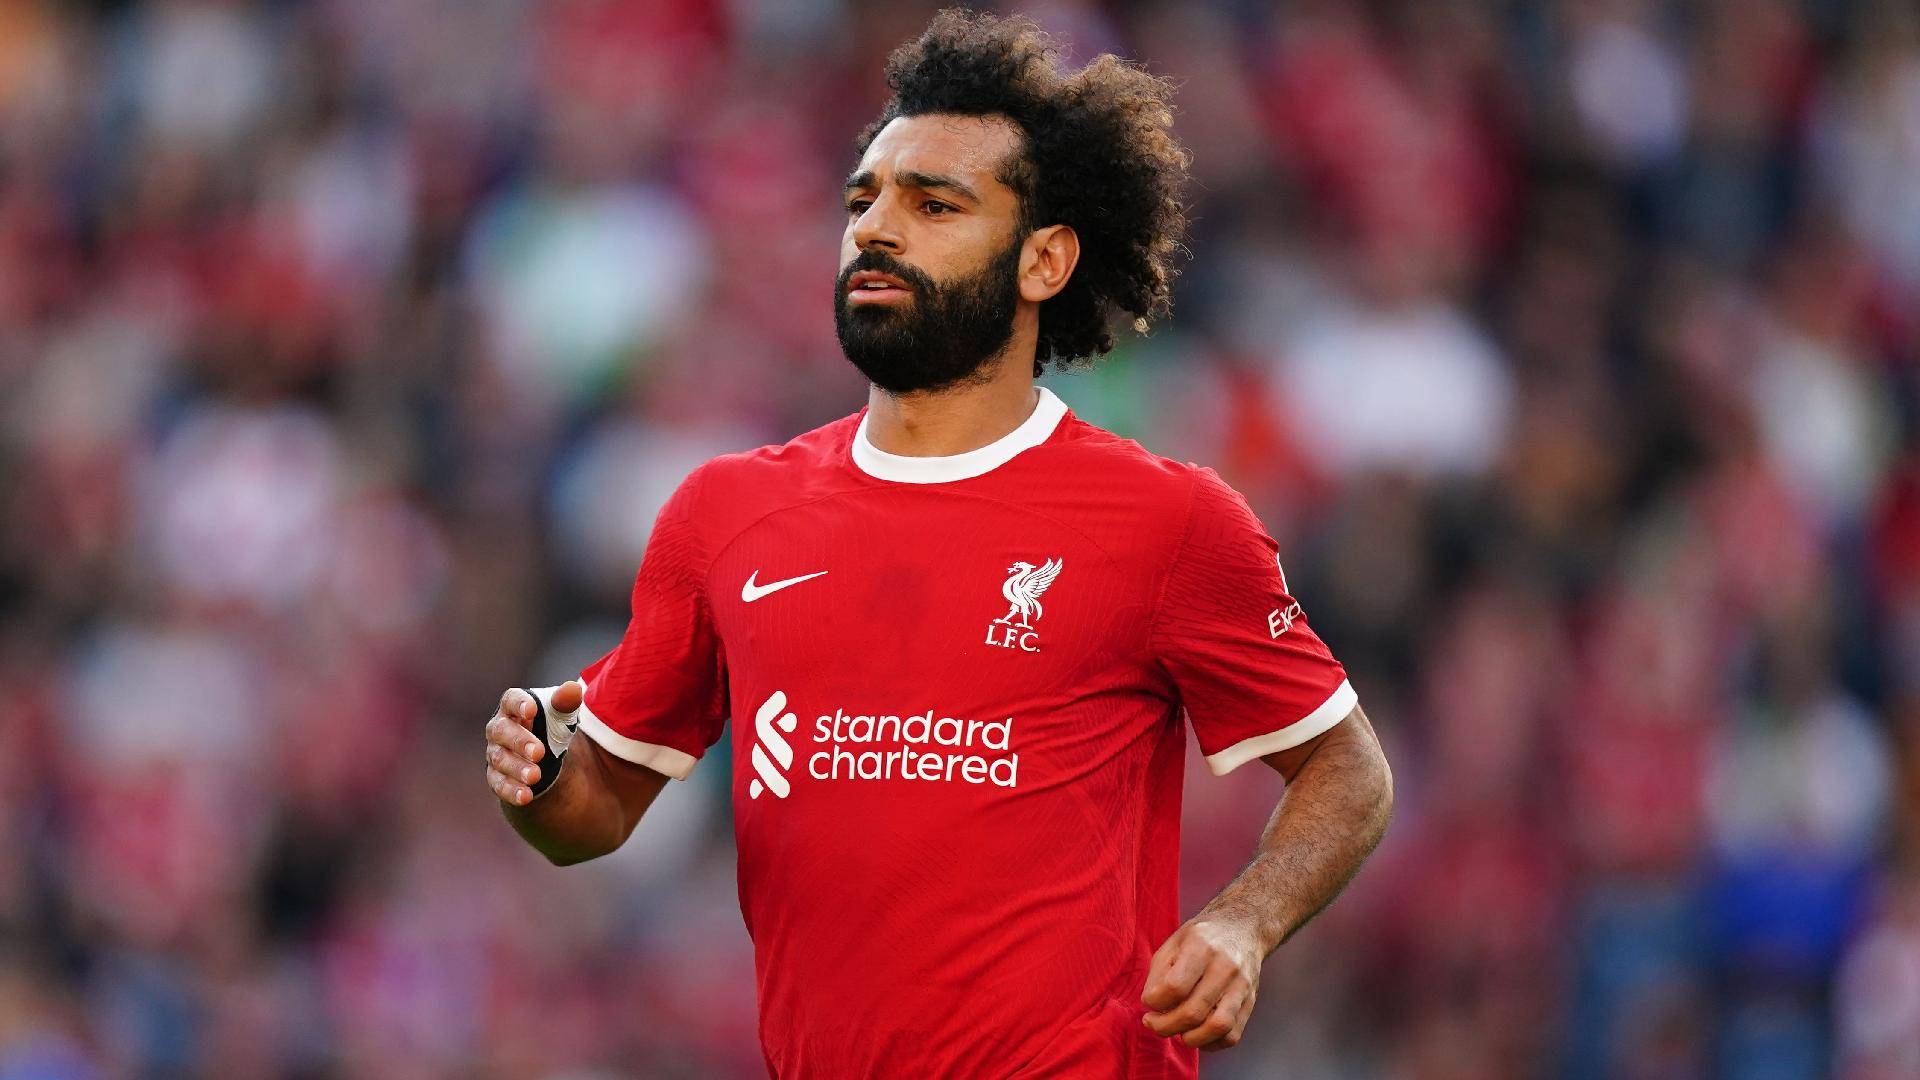 Liverpool sẽ không có sự phục vụ của Mohamed Salah, ngôi sao hàng đầu của họ